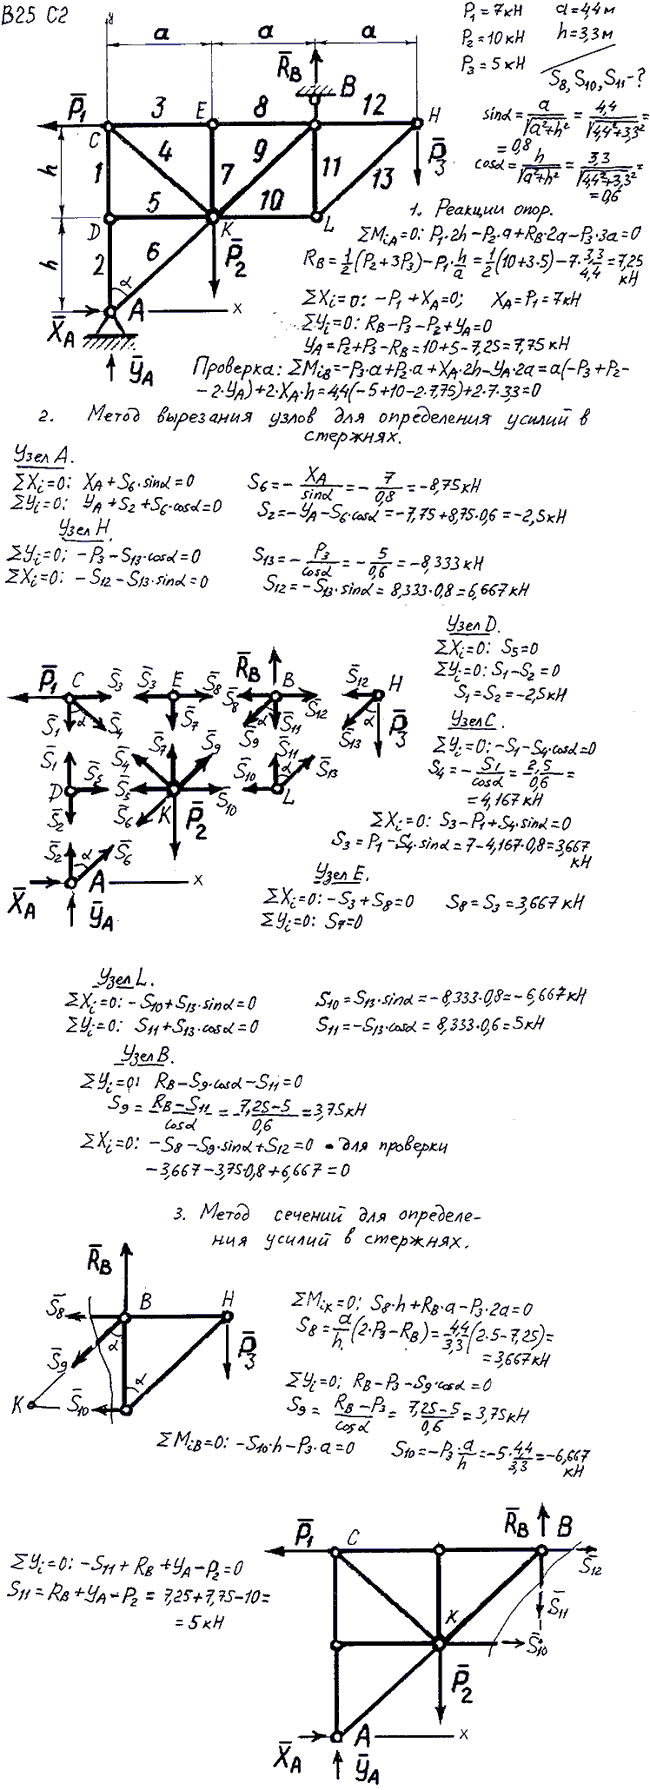 Задание C2 вариант 25. P1=7 кН, P2=10 кН, P3=5 кН, a=4,4 м, h=3,3 м, номер стержня 8, 10, 11.